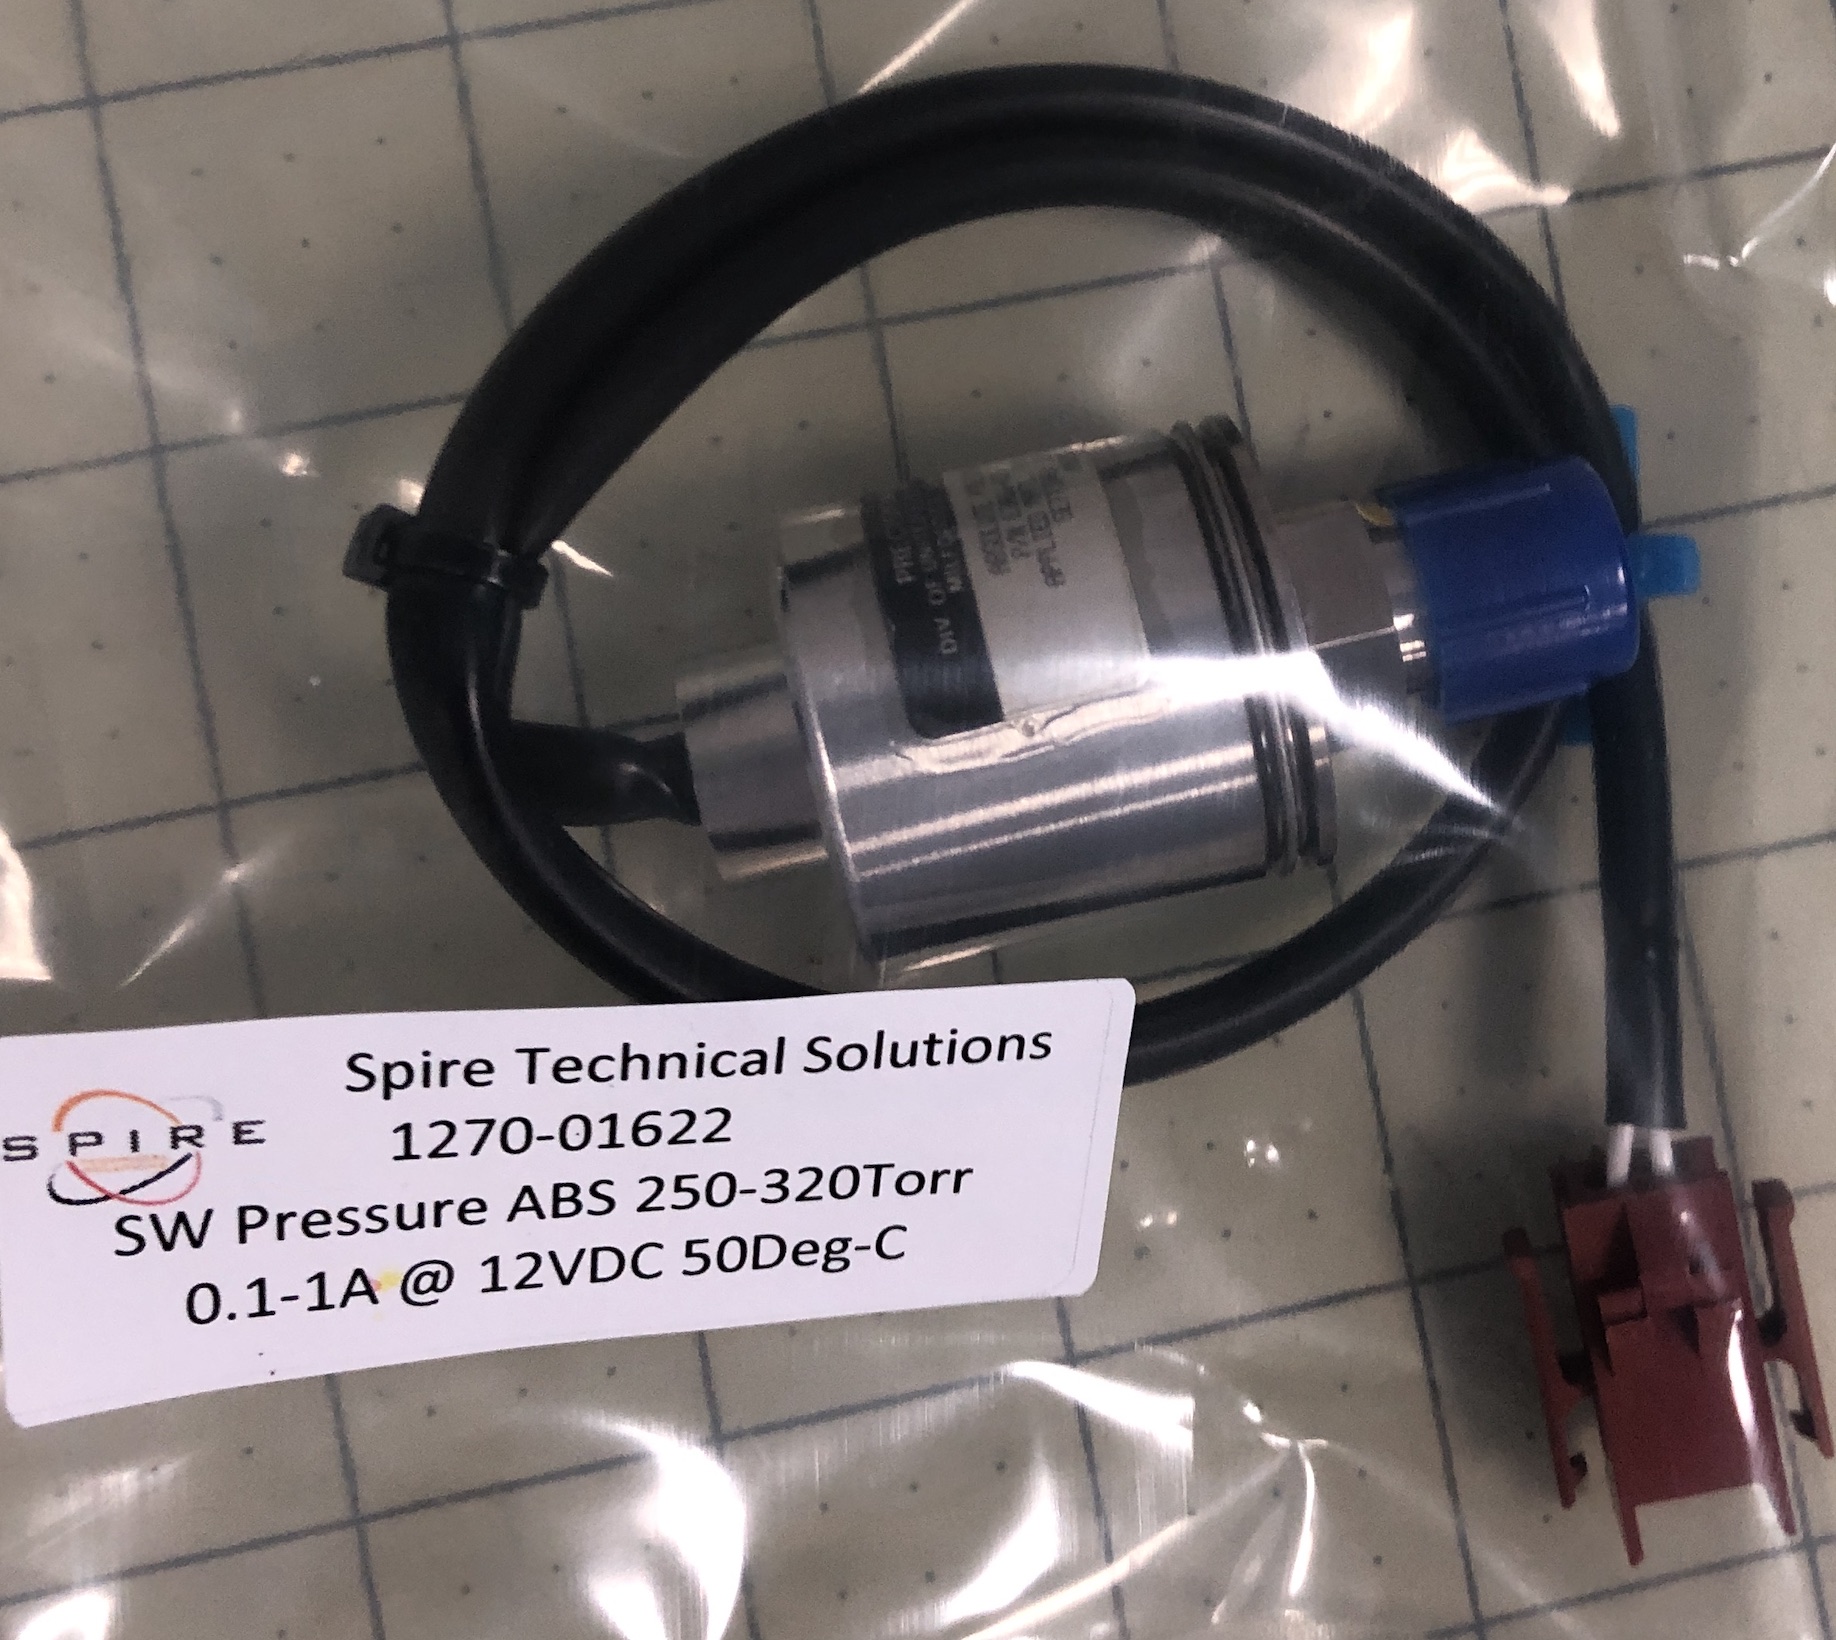 SW Pressure ABS 250-320Torr   0.1-1A @ 12VDC 50Deg-C